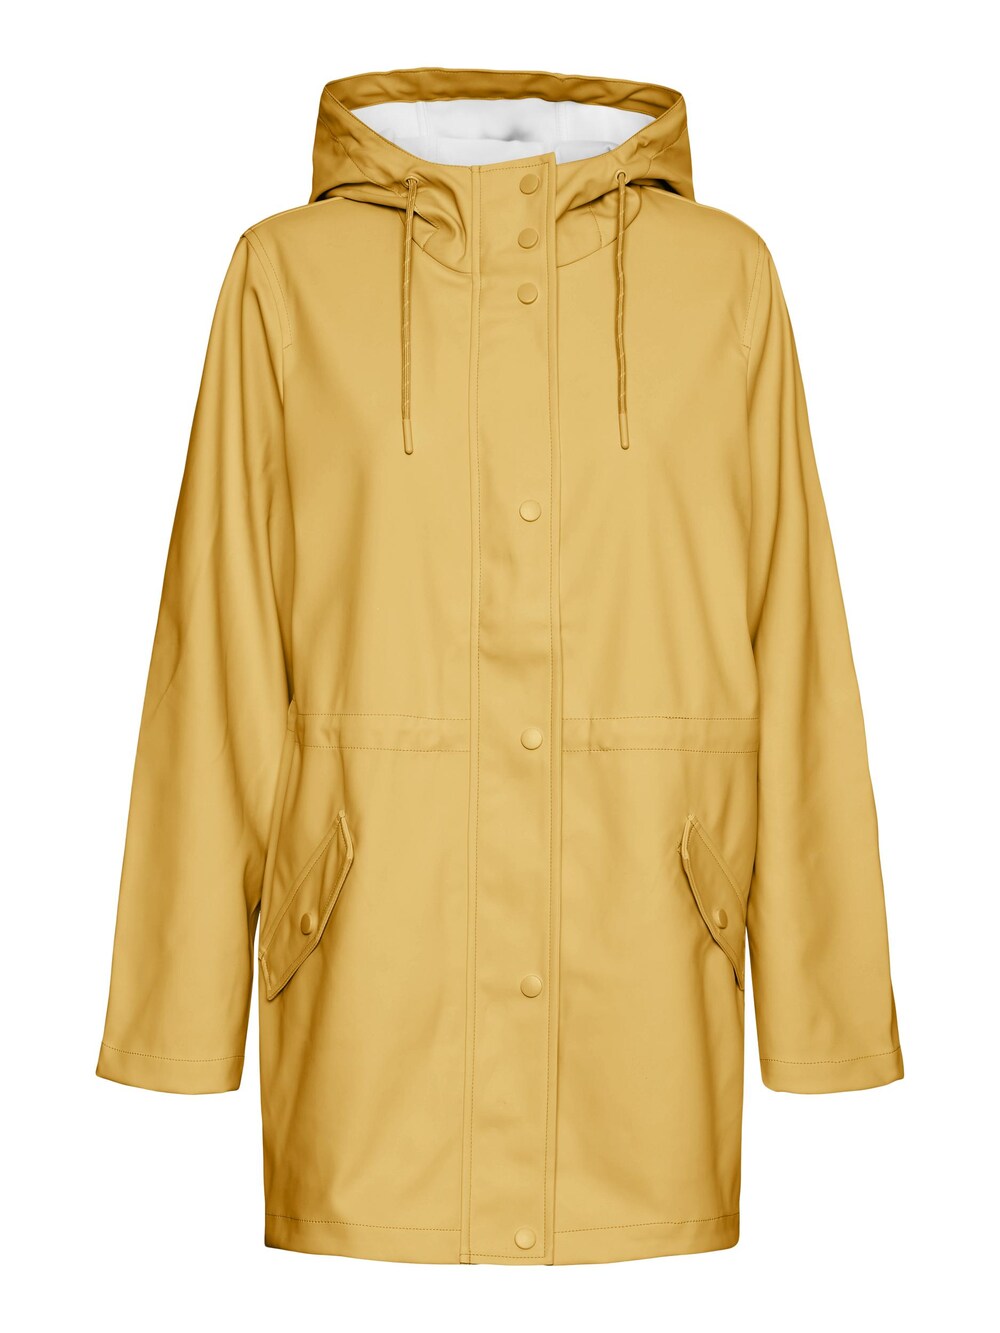 Межсезонная куртка Vero Moda Malou, желтый